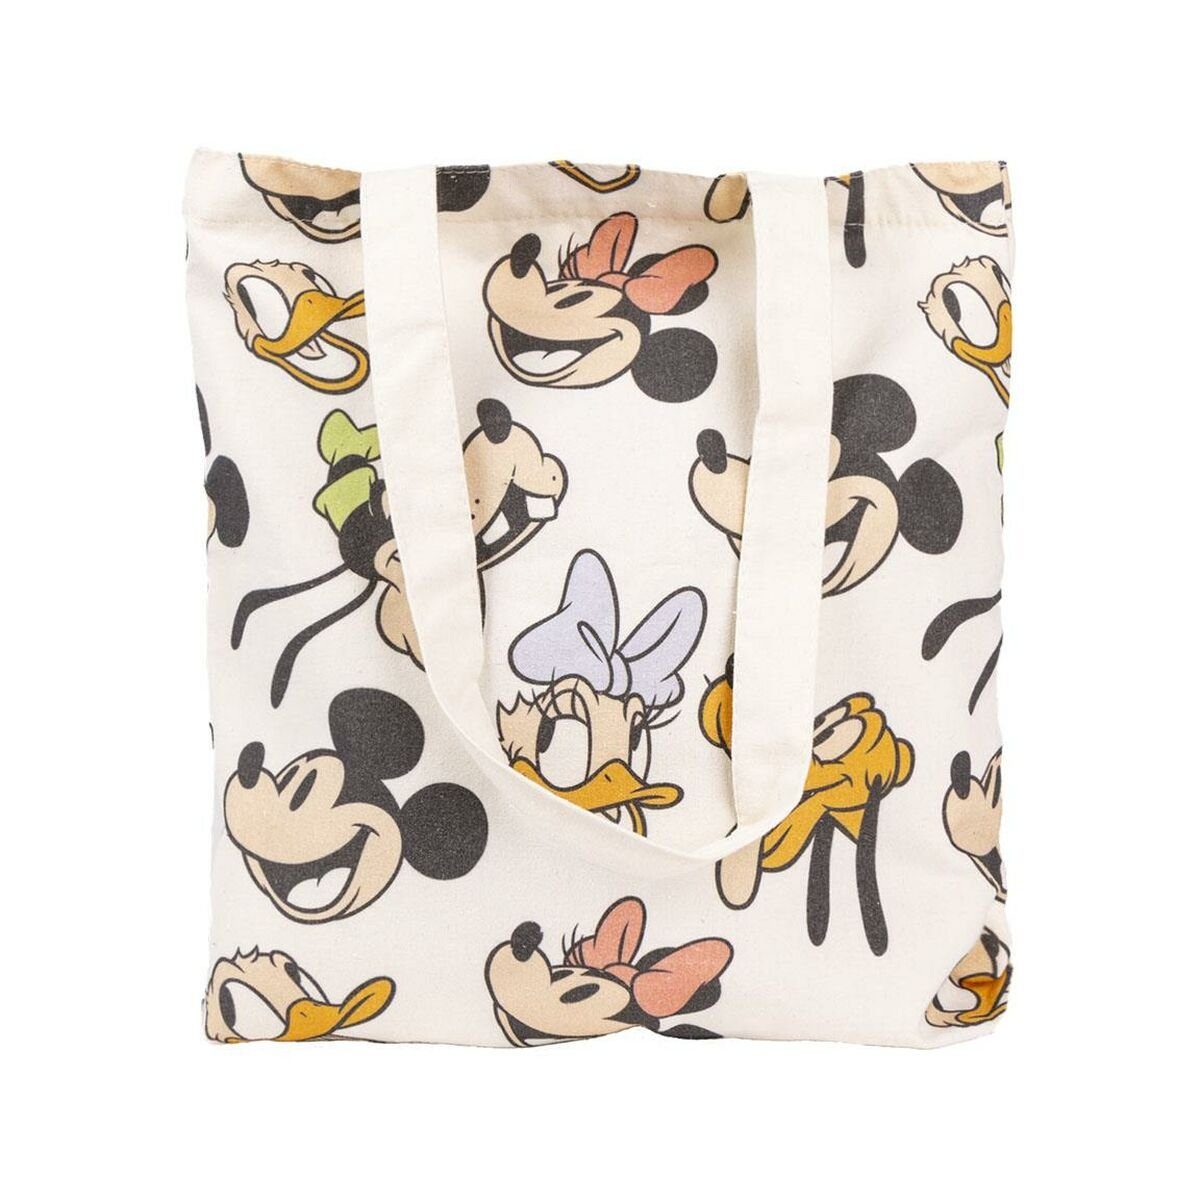 36 Mouse 0,4 x x Einkaufstasche cm Bunt Disney 39 Minnie Mouse Handtasche Minnie